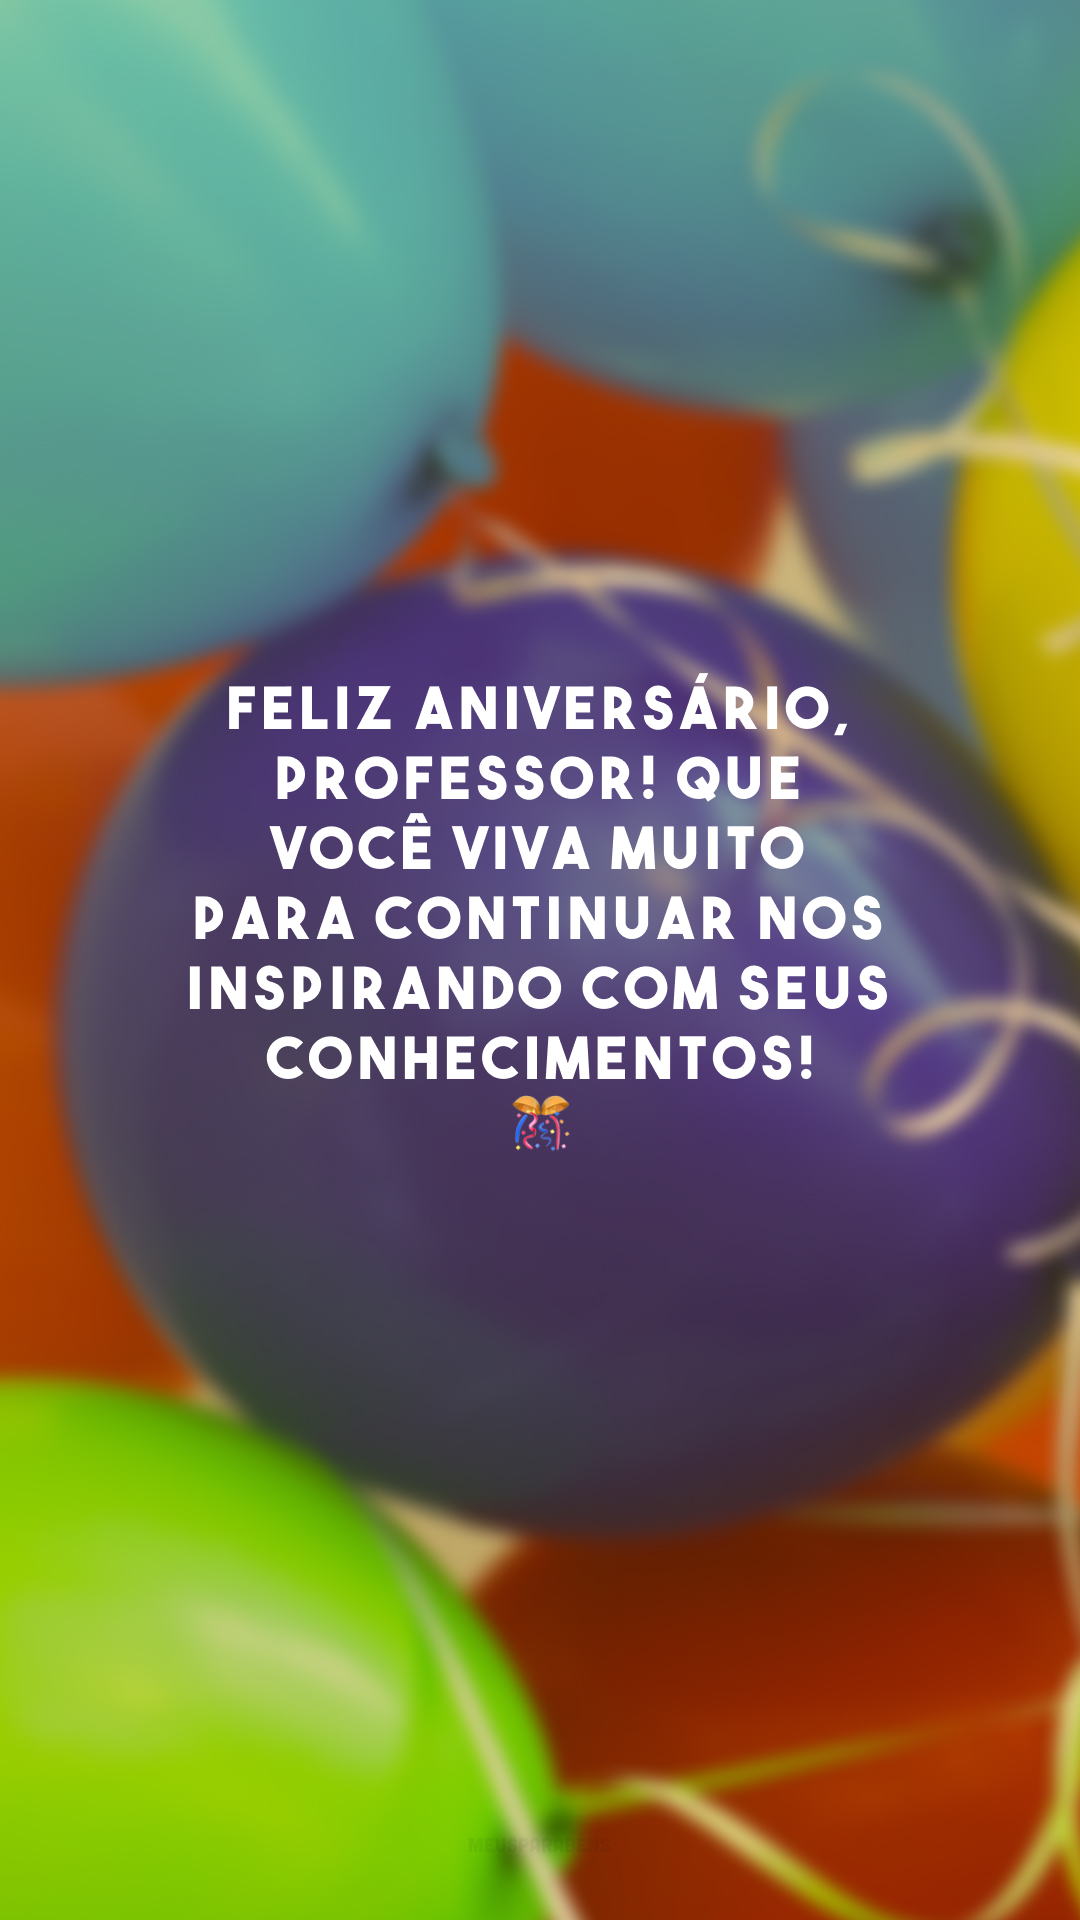 Feliz aniversário, professor! Que você viva muito para continuar nos inspirando com seus conhecimentos! 🎊